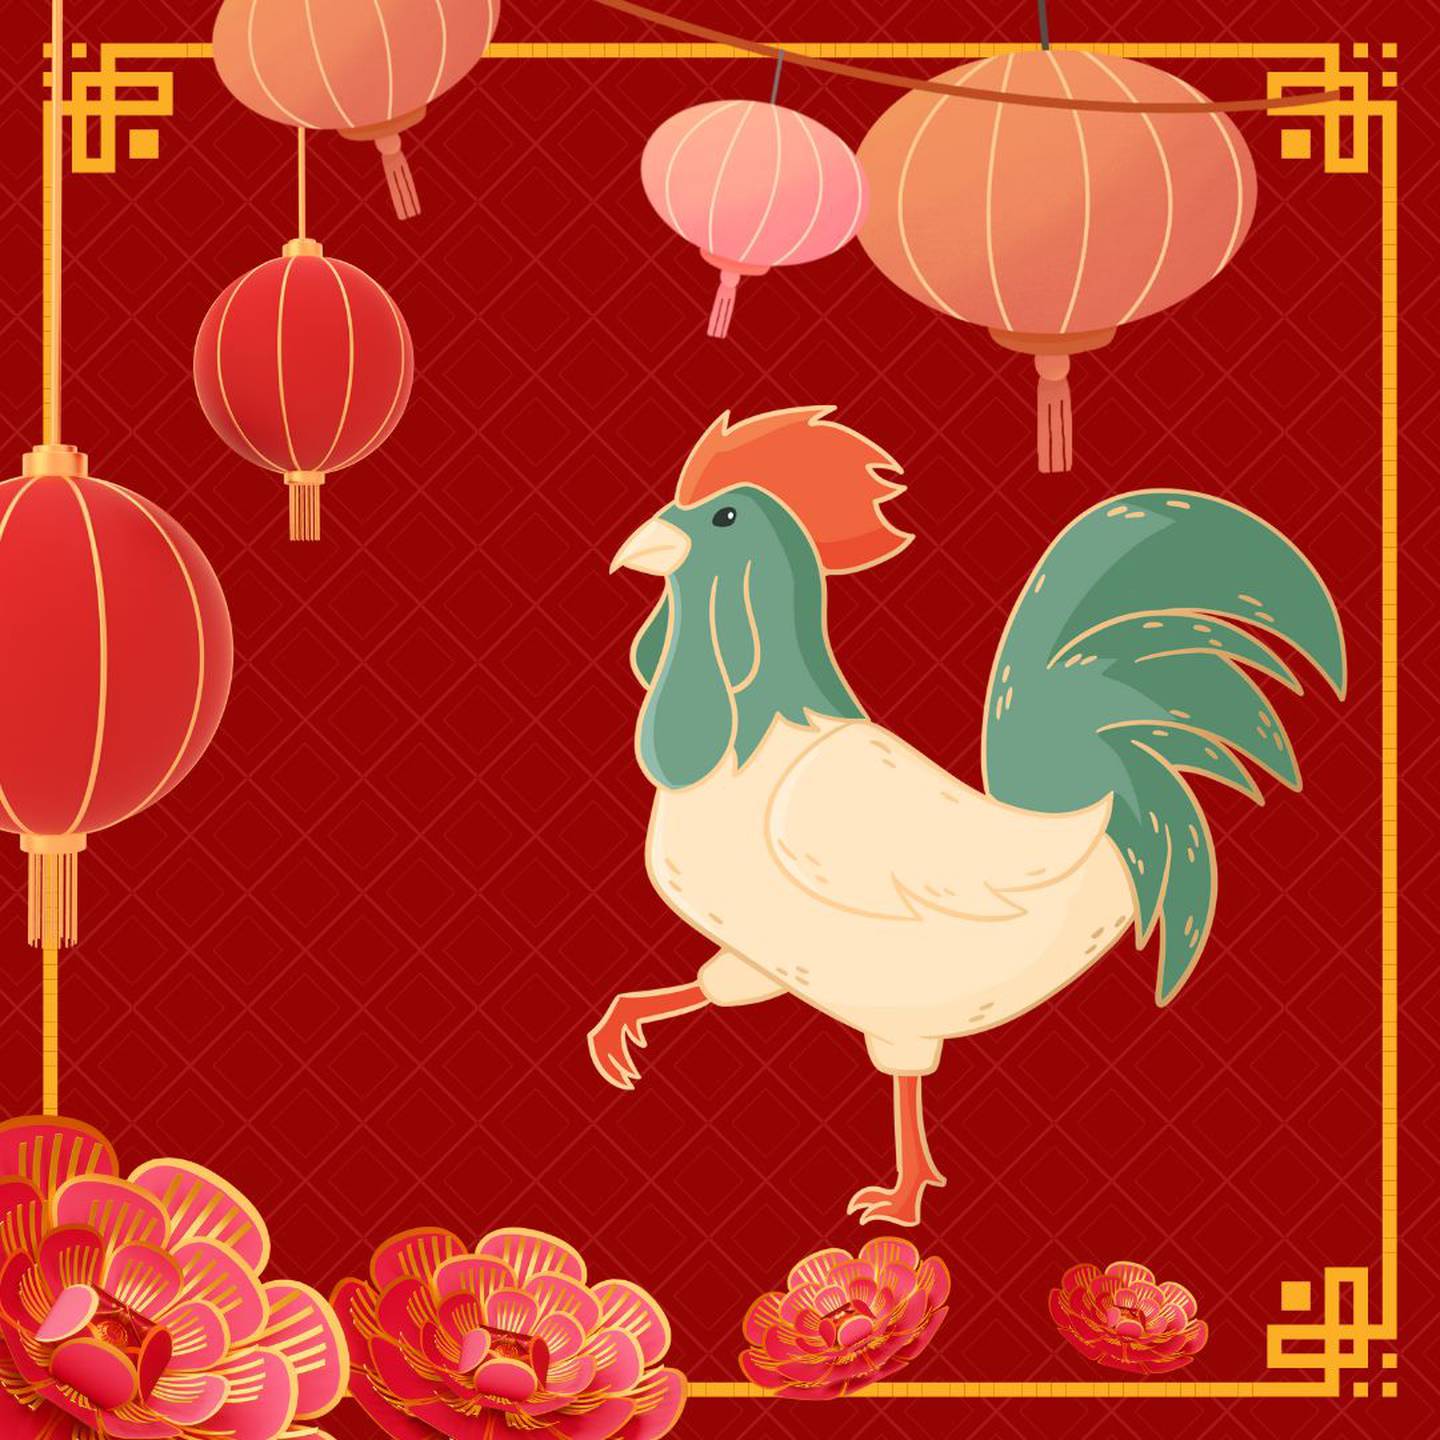 Caricatura de un gallo sobre un fondo rojo con motivos orientales.